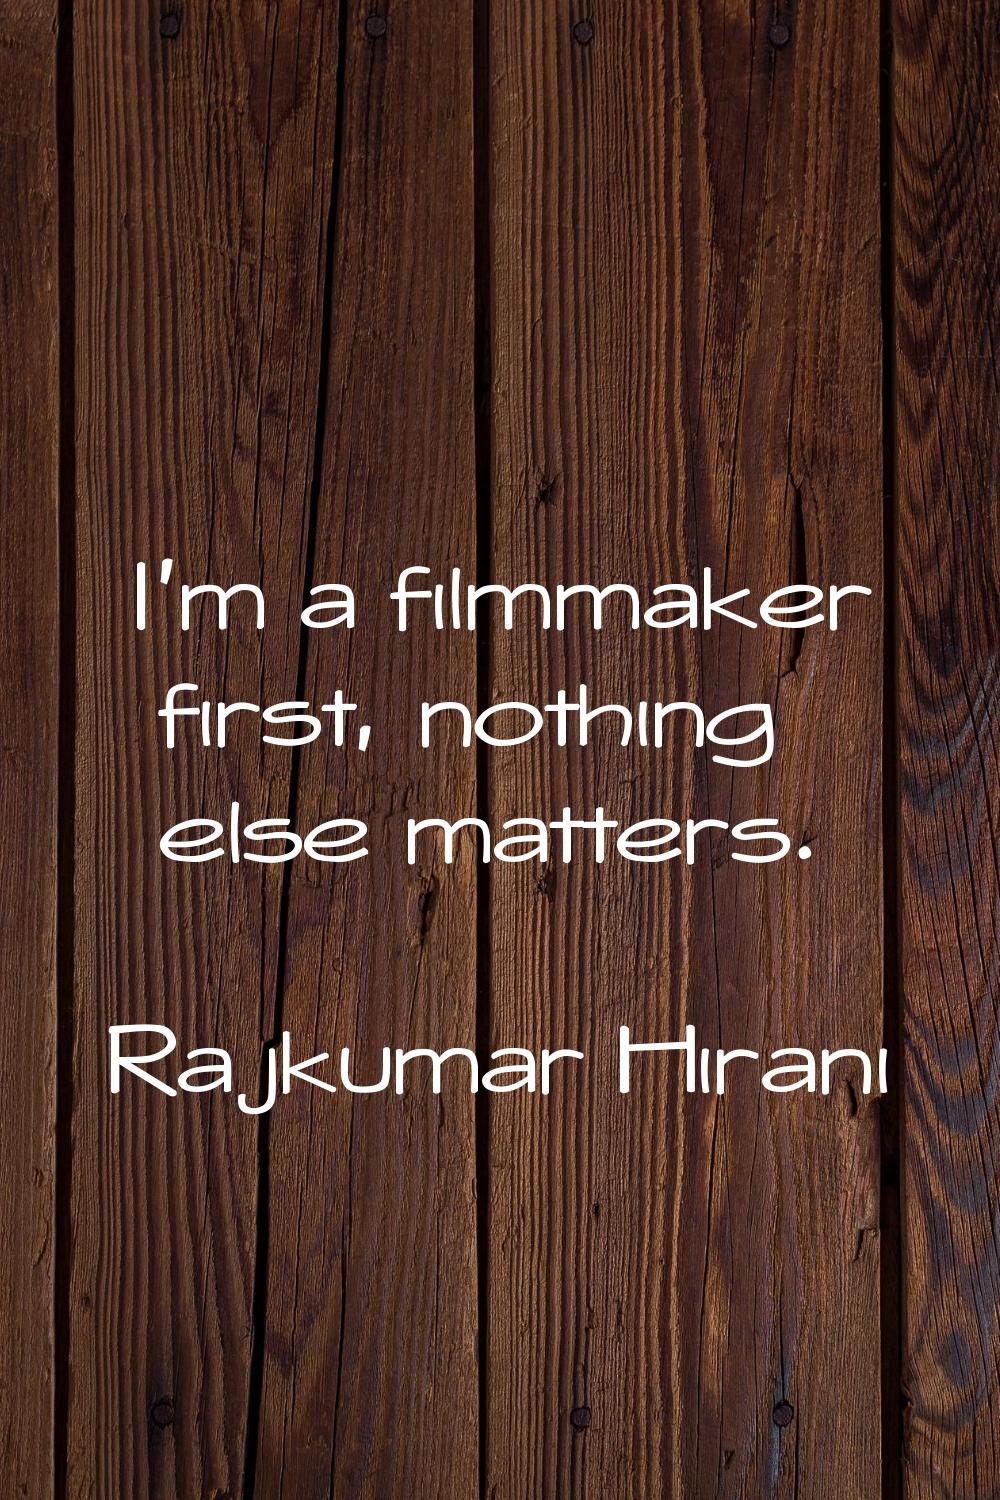 I'm a filmmaker first, nothing else matters.